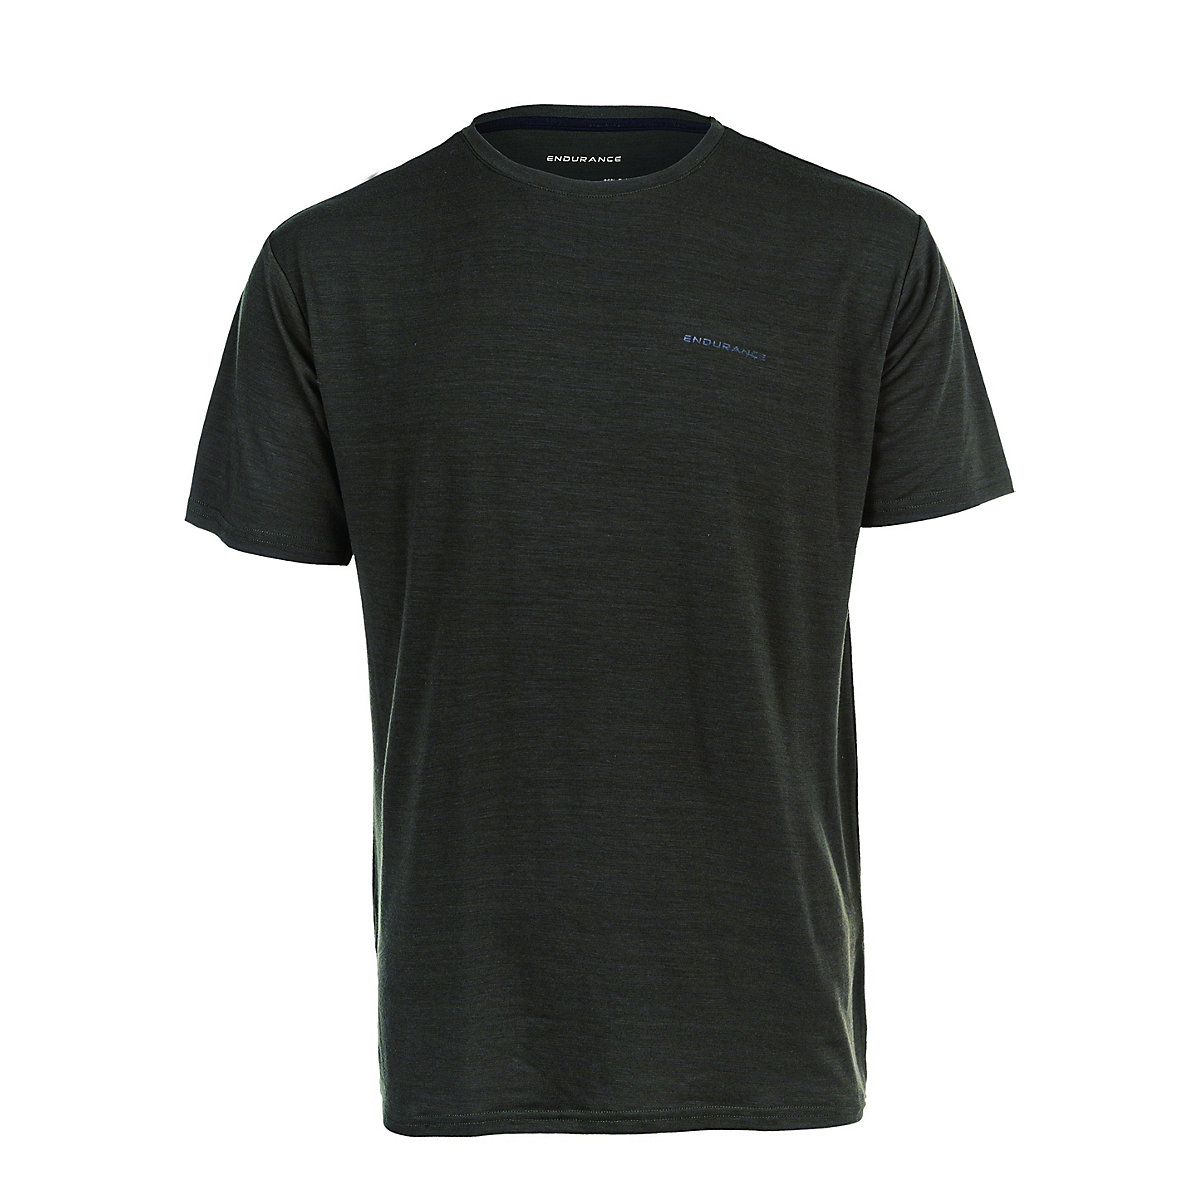 Endurance T-shirt dunkelgrün